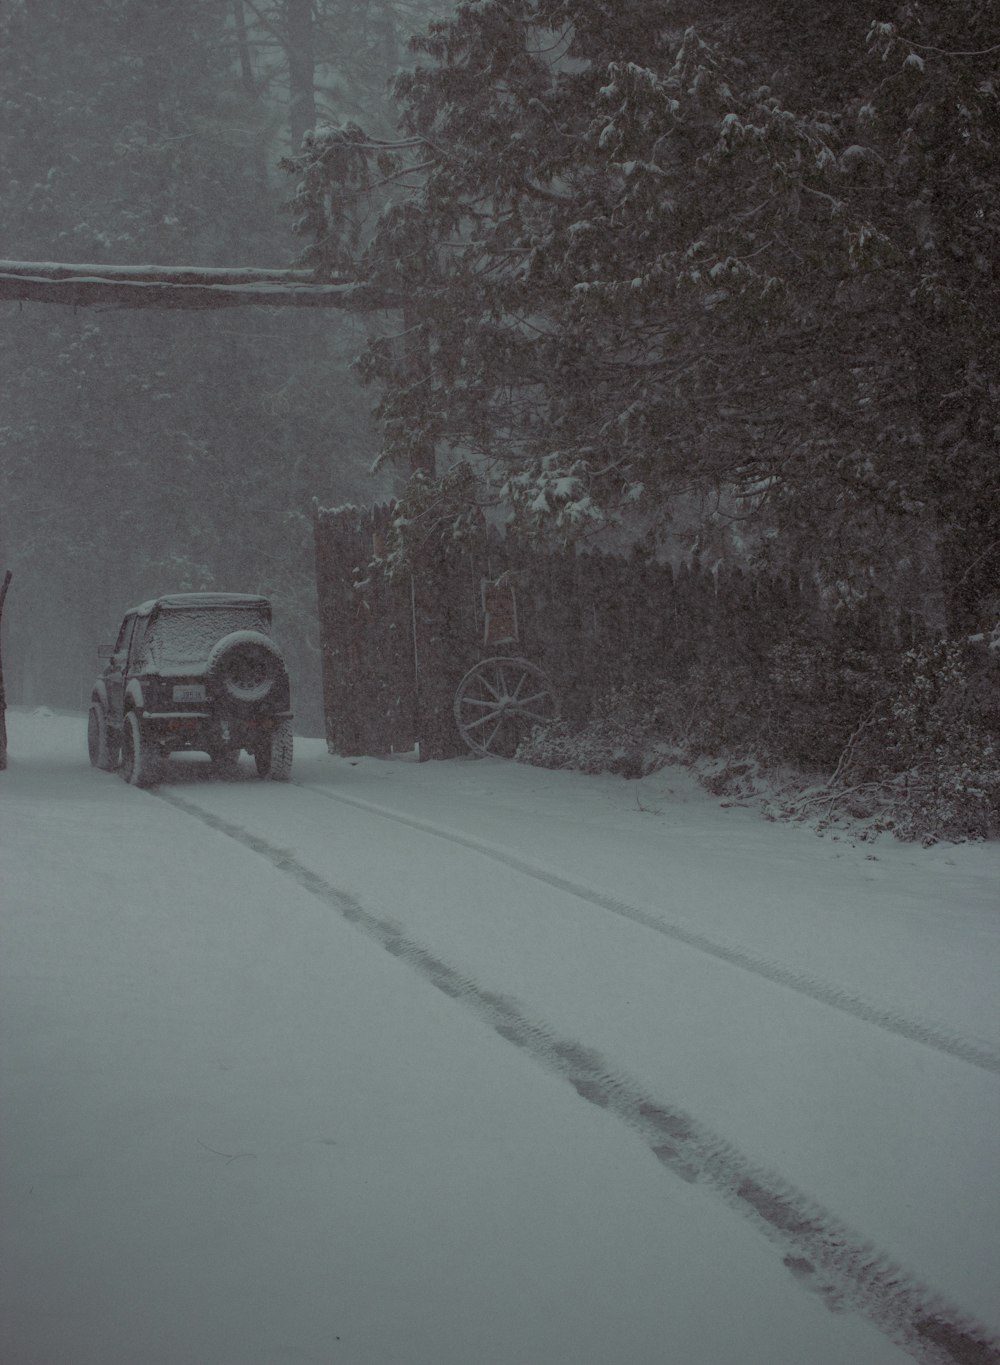 Ein Lastwagen, der eine schneebedeckte Straße entlangfährt